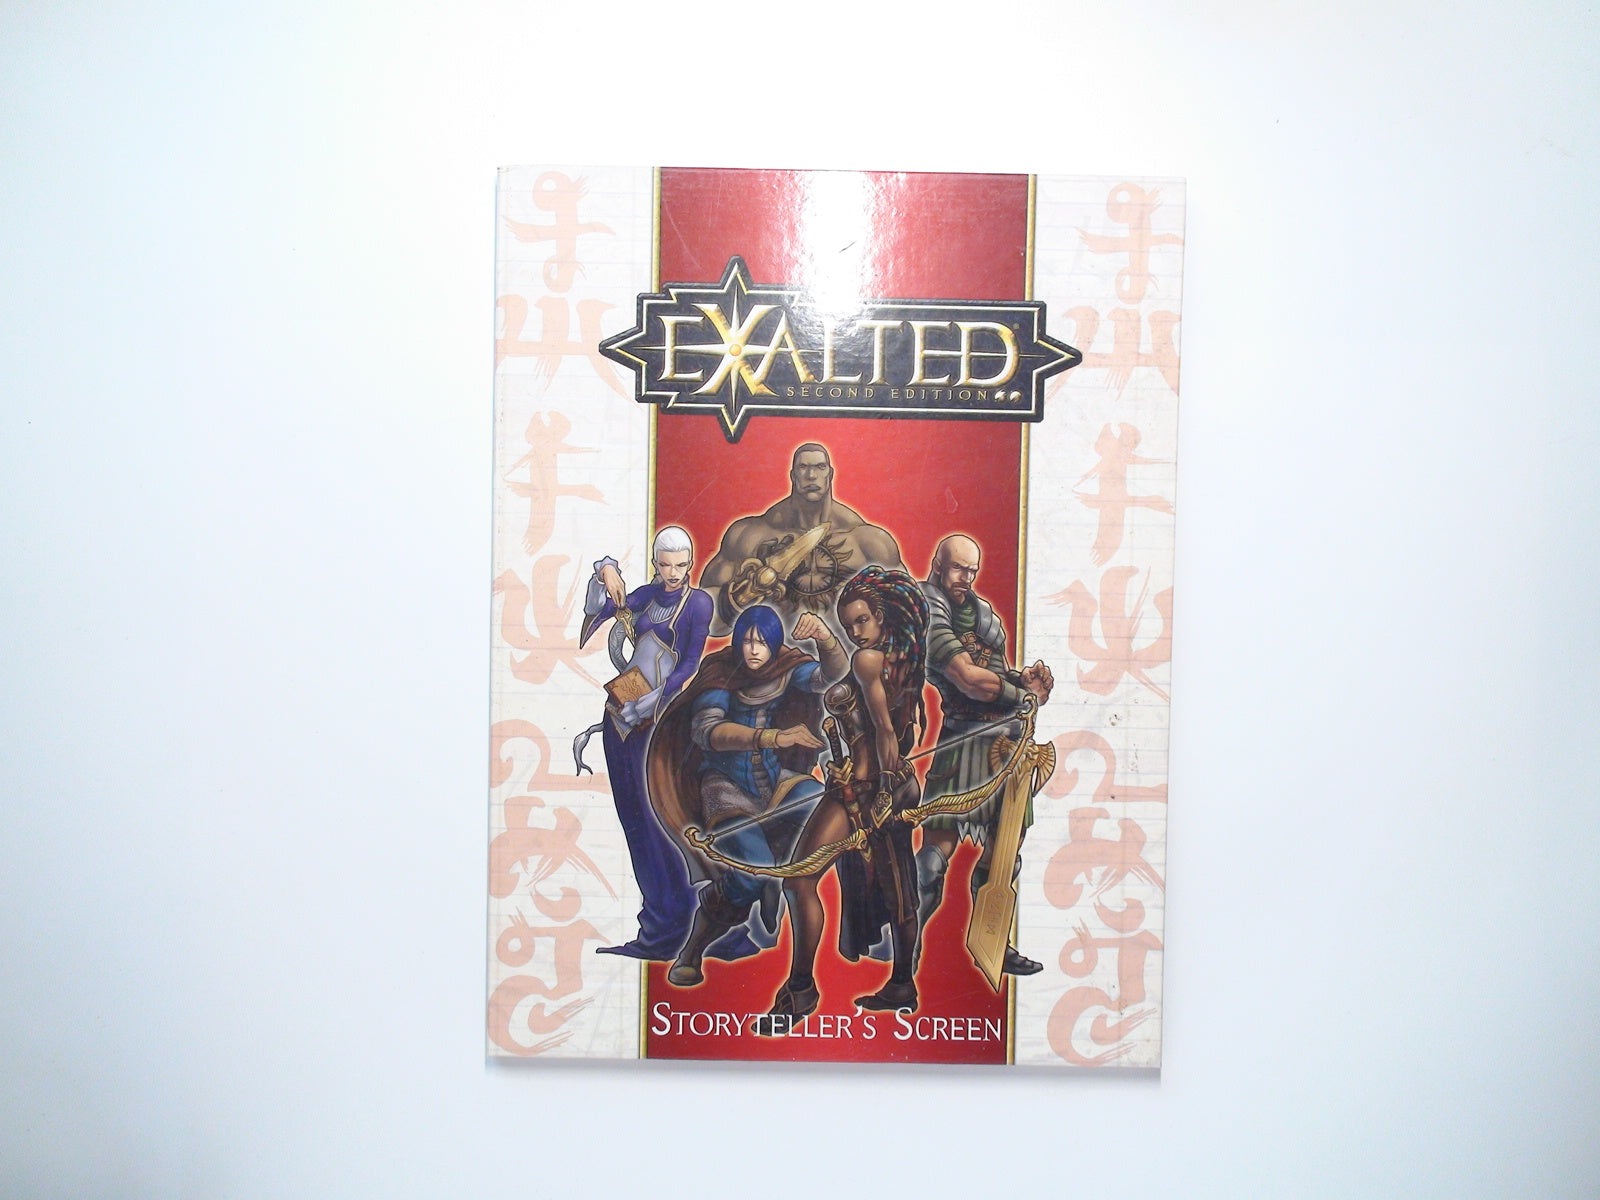 Exalted Storyteller's Screen, 2nd Ed., White Wolf, RPG, 2006